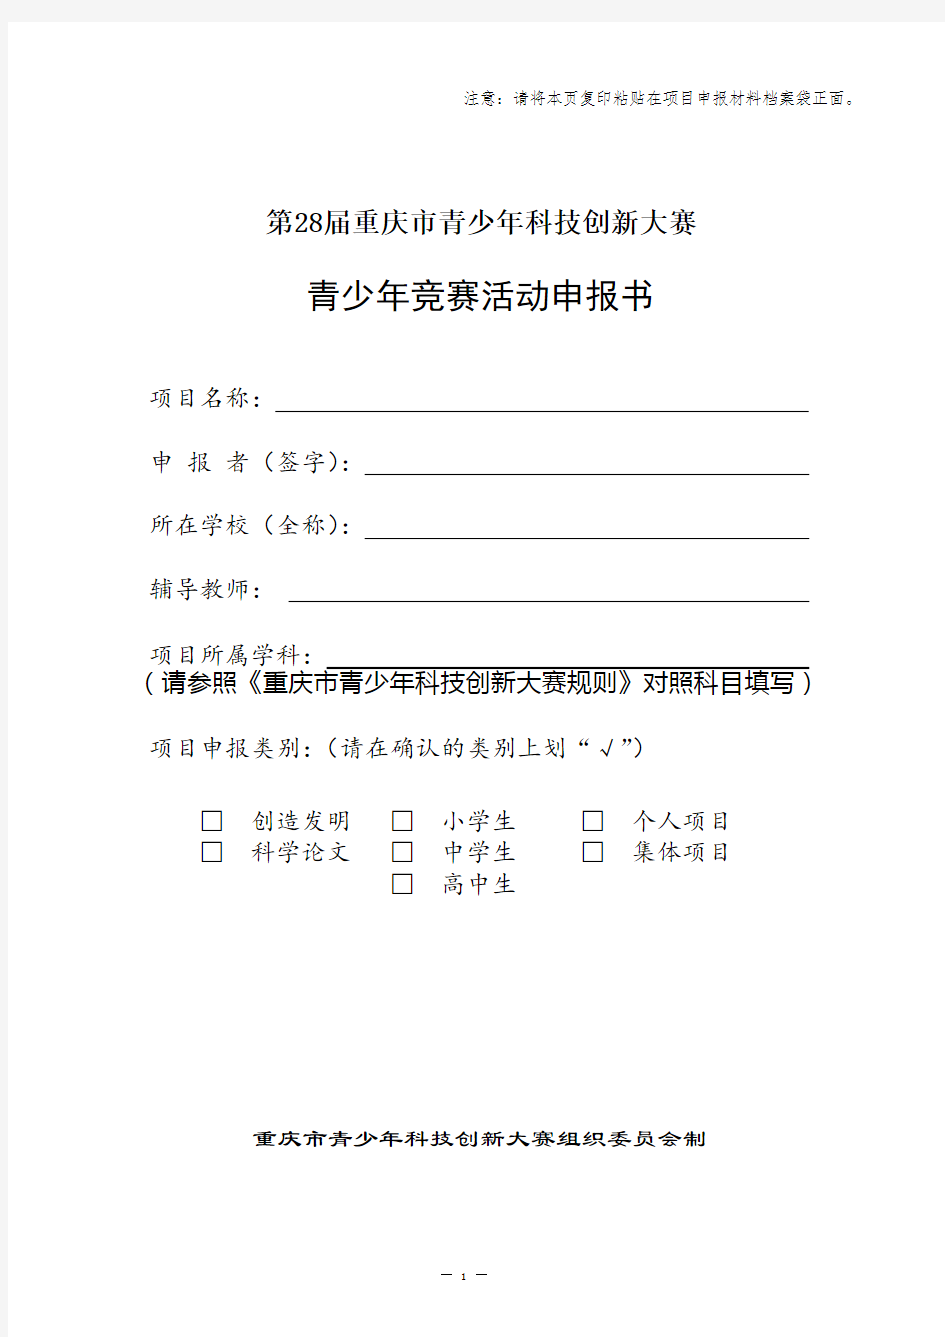 重庆市青少年科技创新大赛青少年竞赛活动申报书